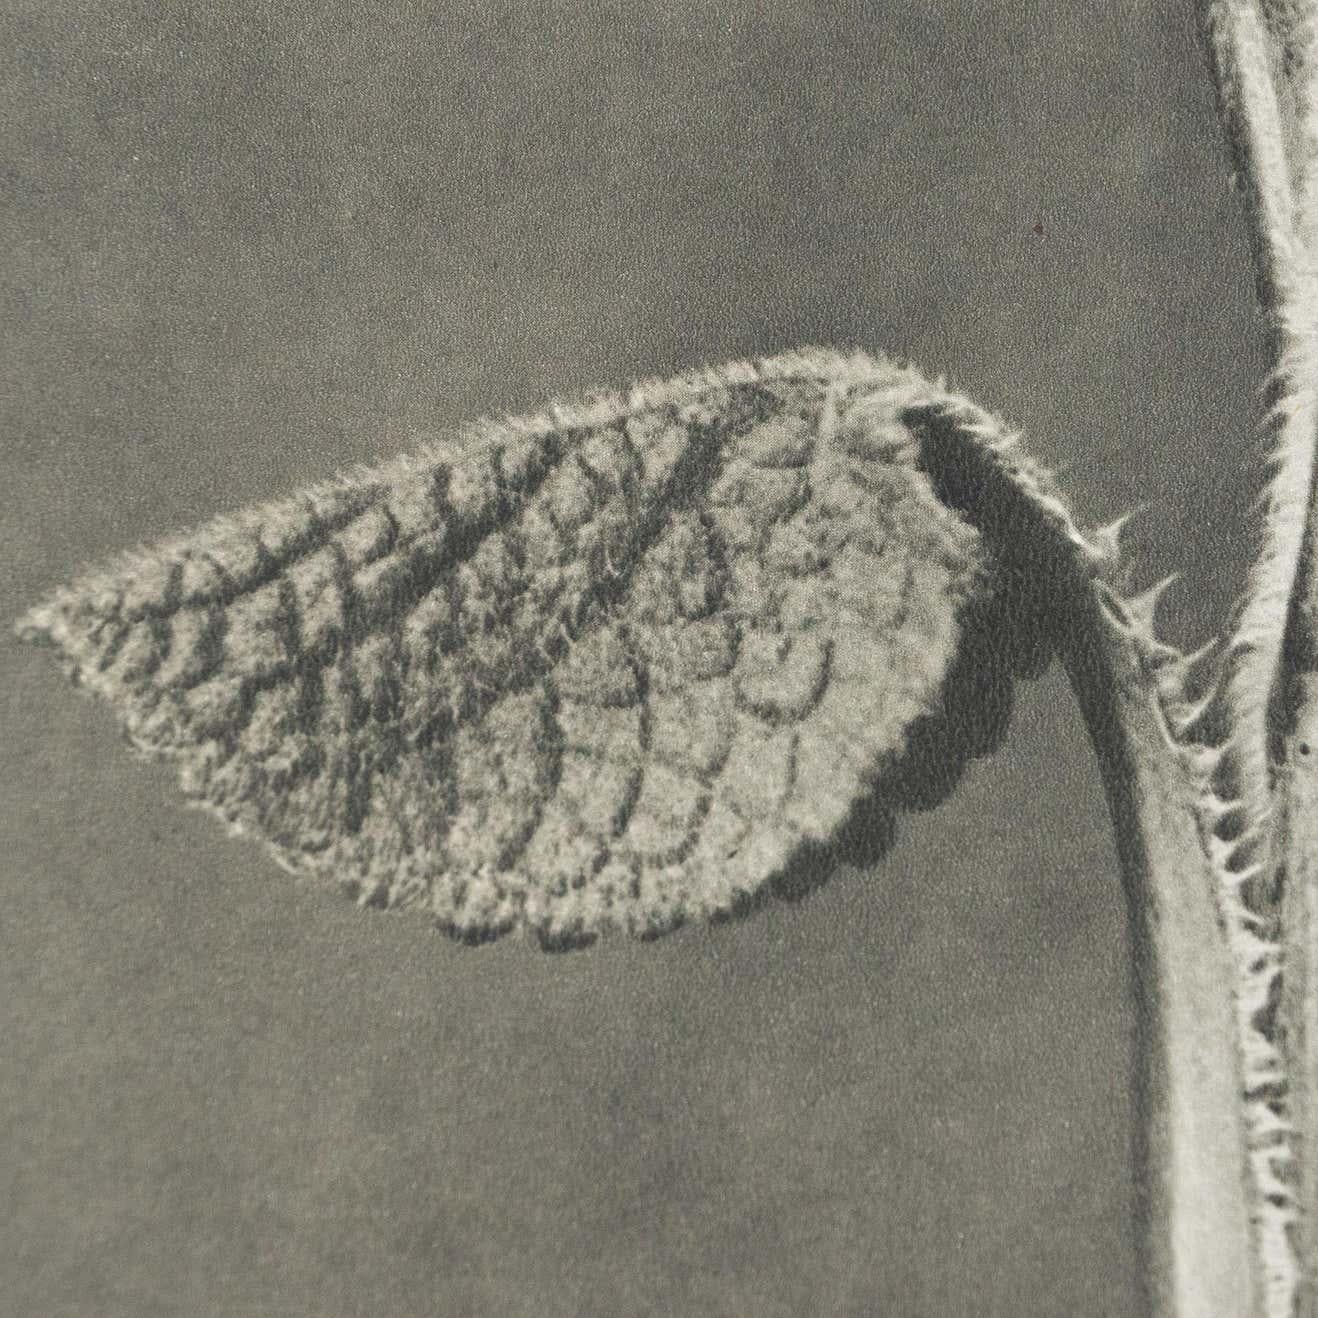 Papier Karl Blossfeldt, photogravure de fleurs noires et blanches, photographie botanique, 1942 en vente